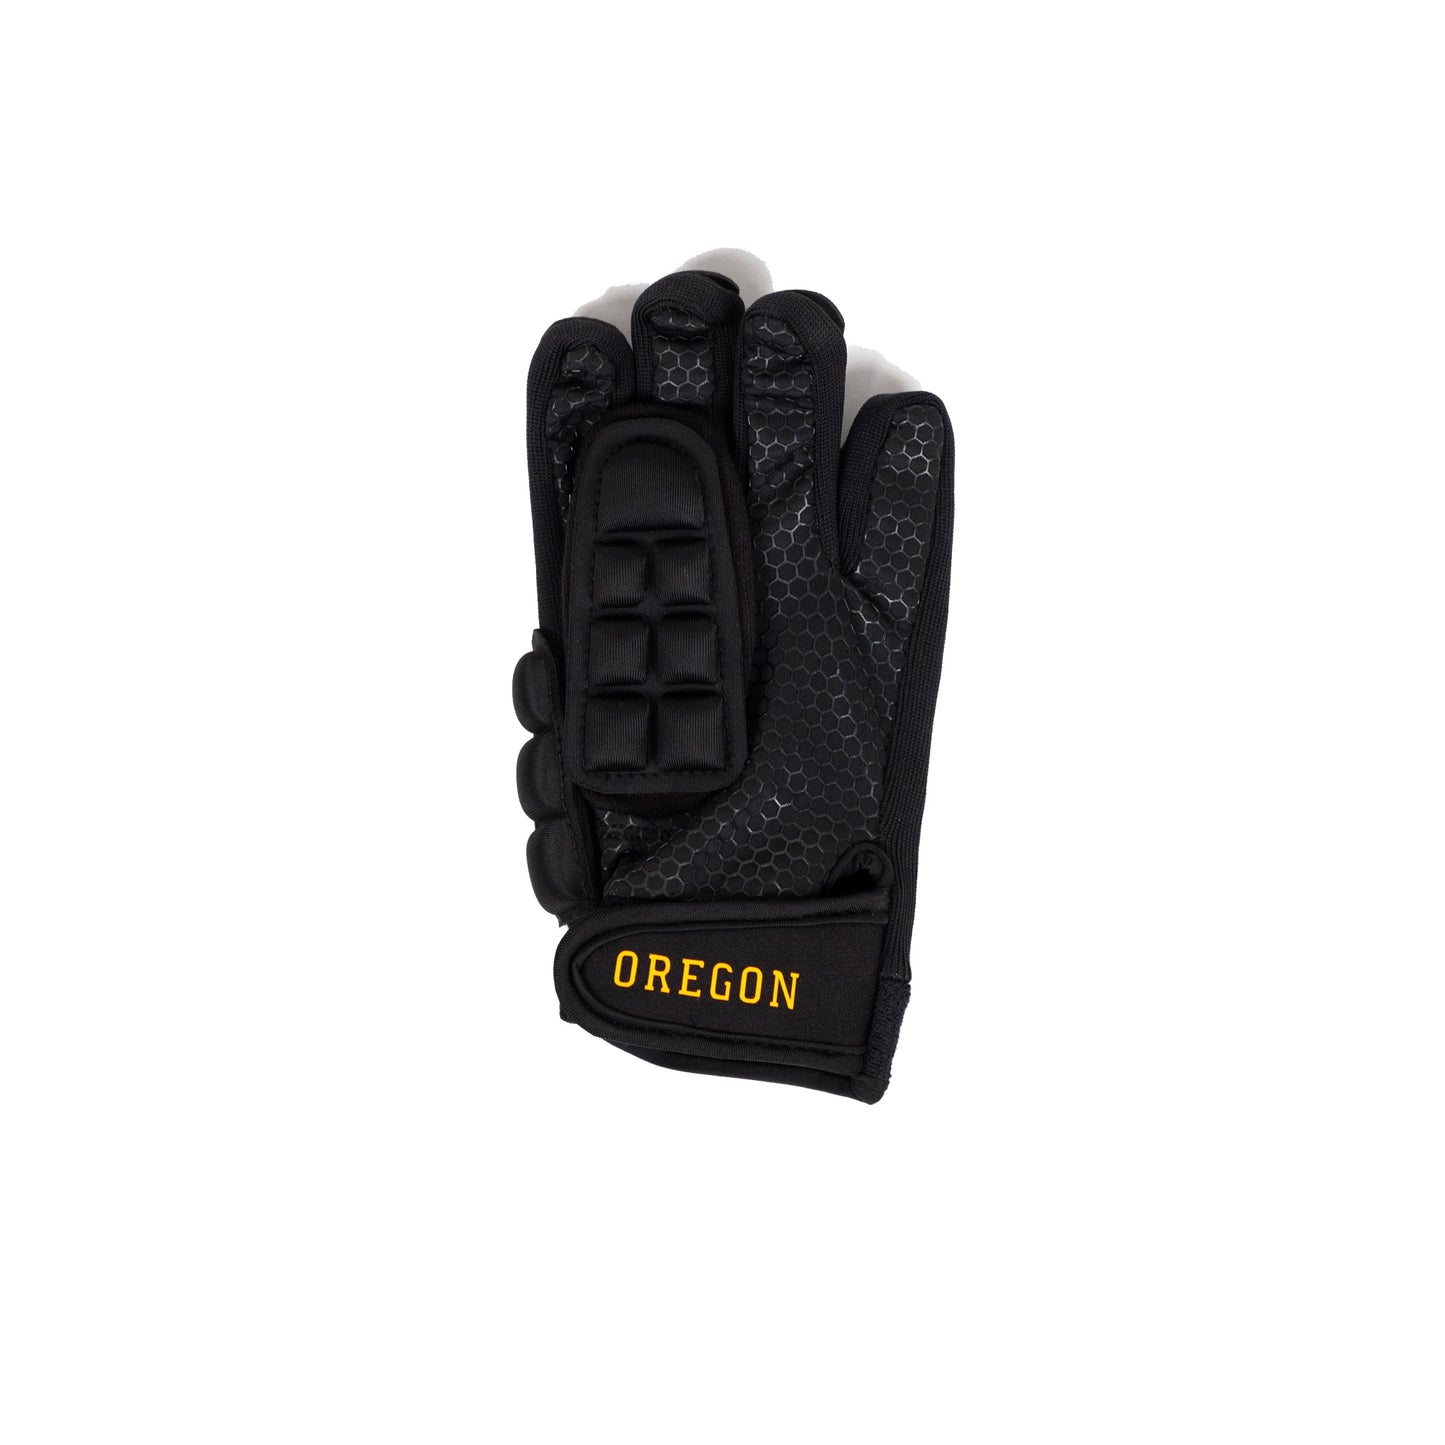 Authentic Indoor Glove